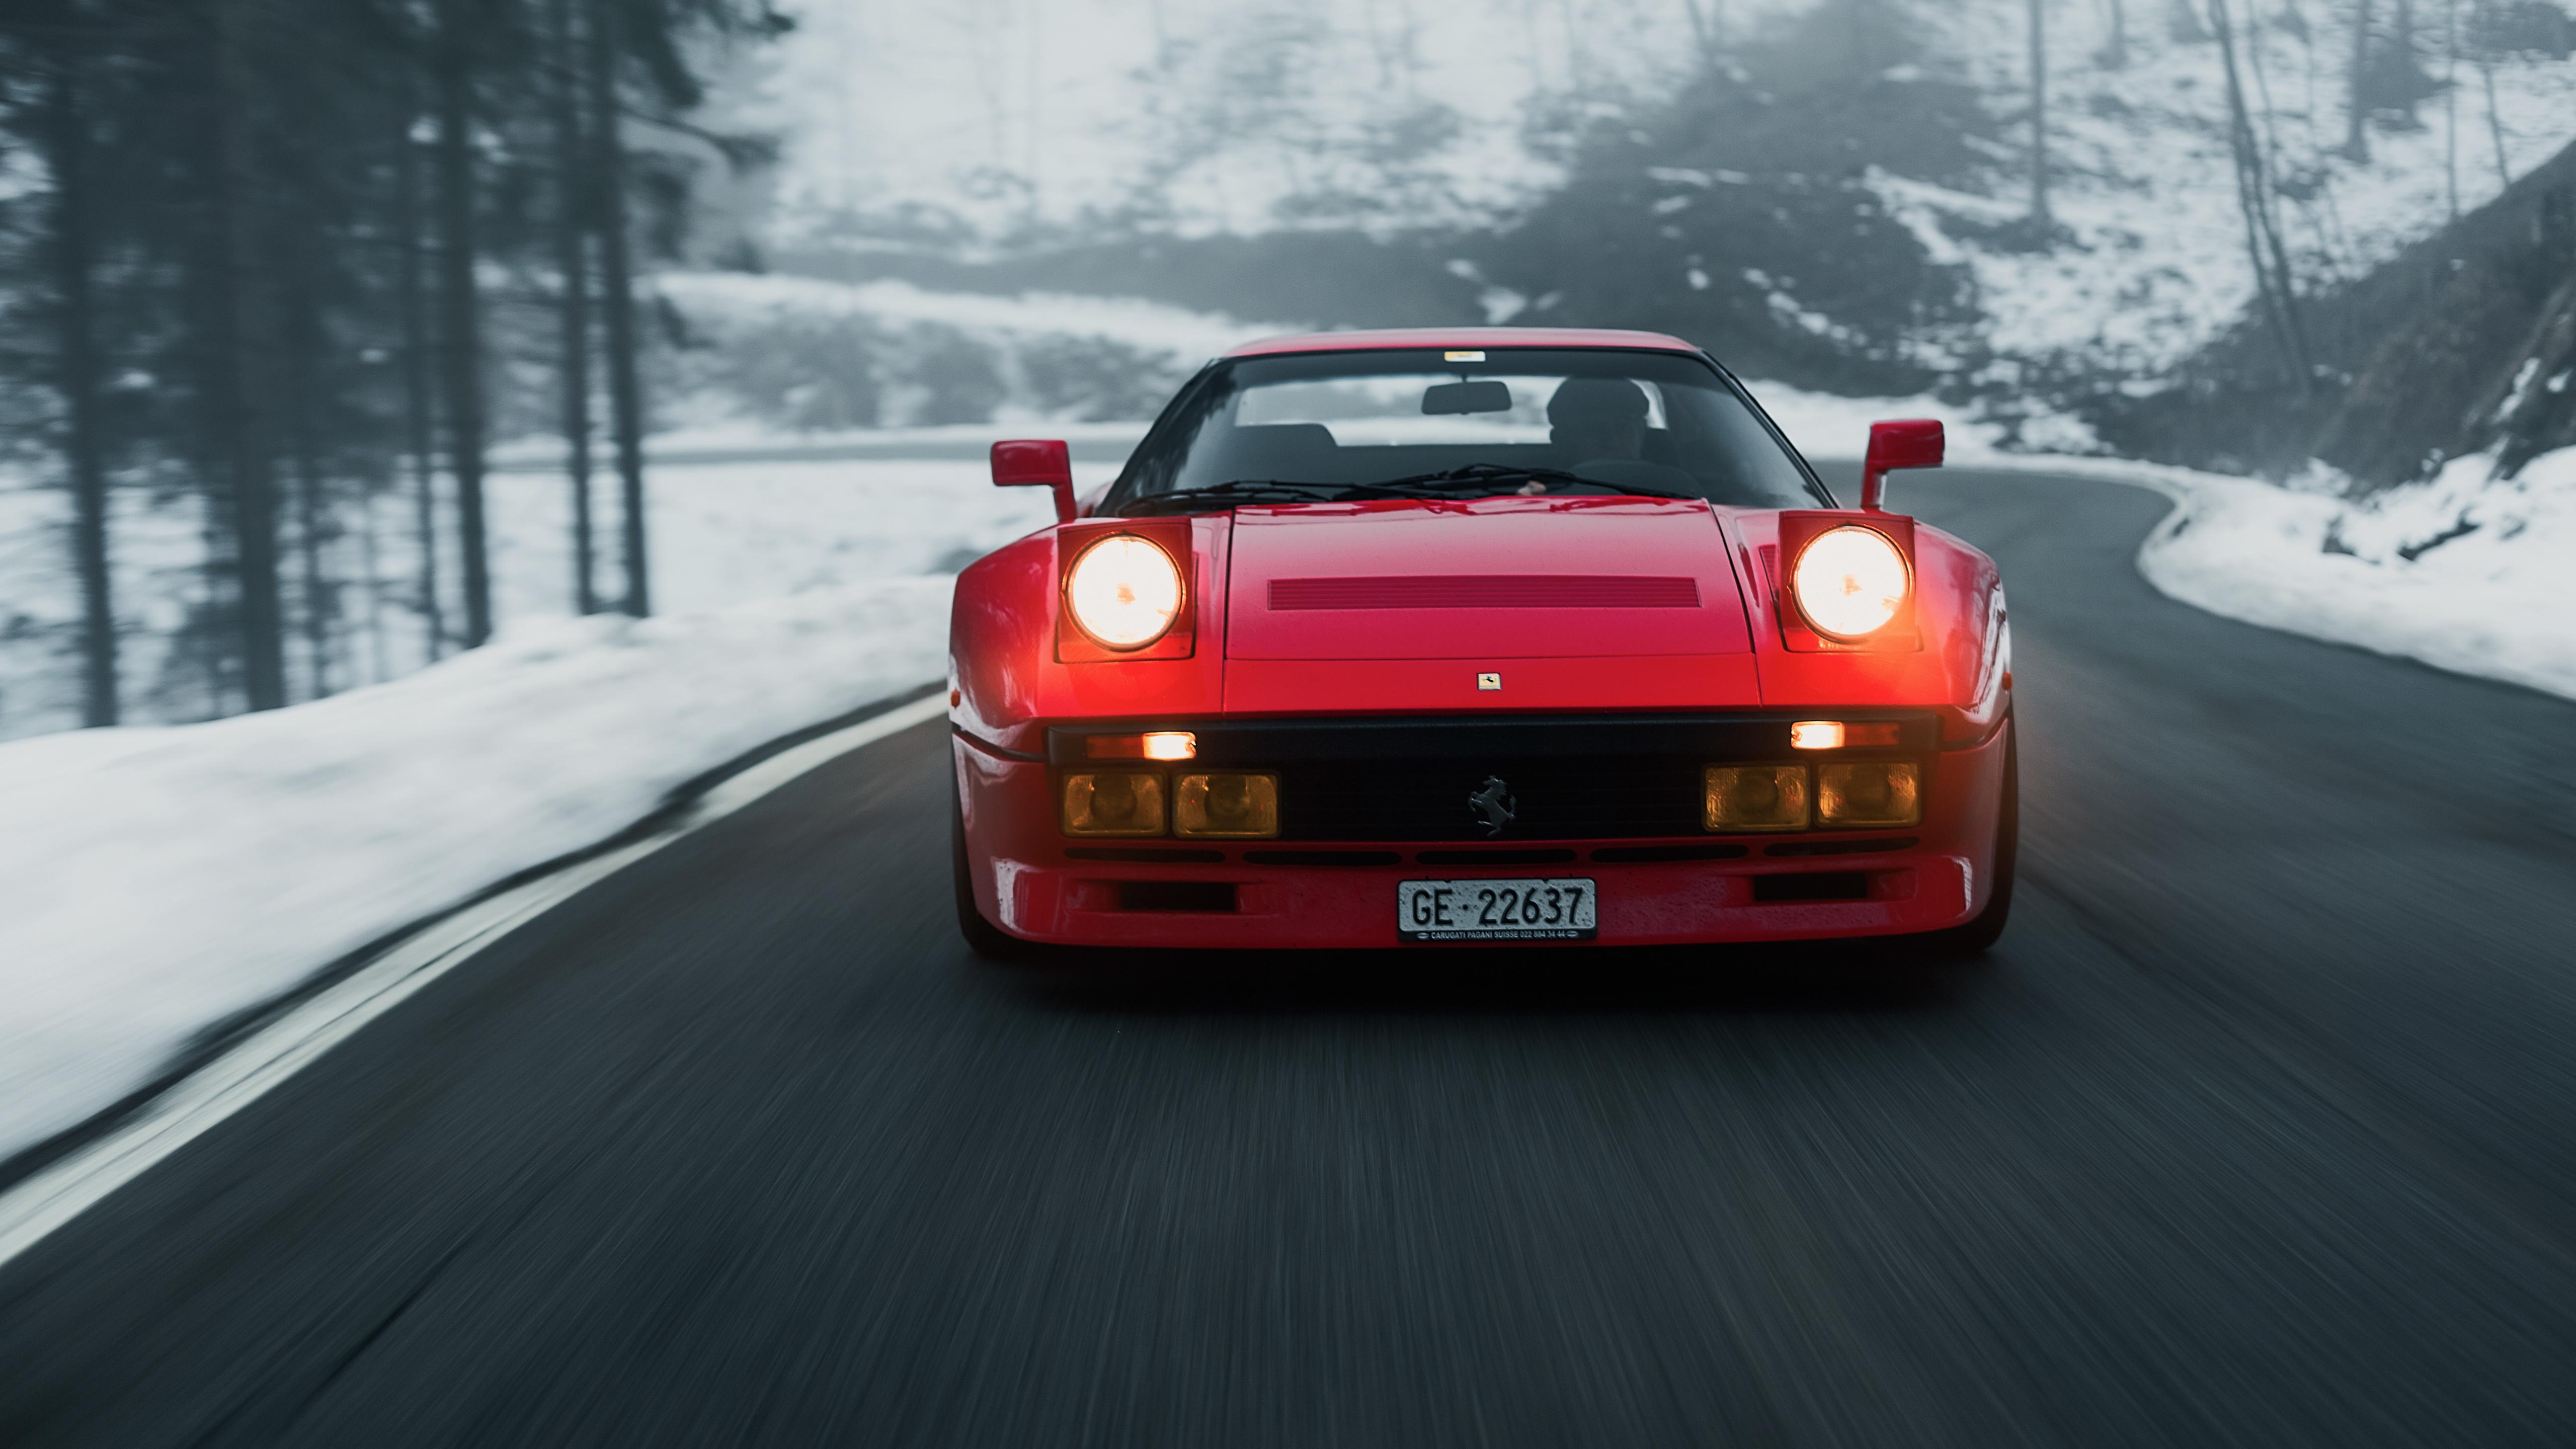 5120 x 2880 · jpeg - Ferrari GTO 1984 5K Wallpaper | HD Car Wallpapers | ID #12508